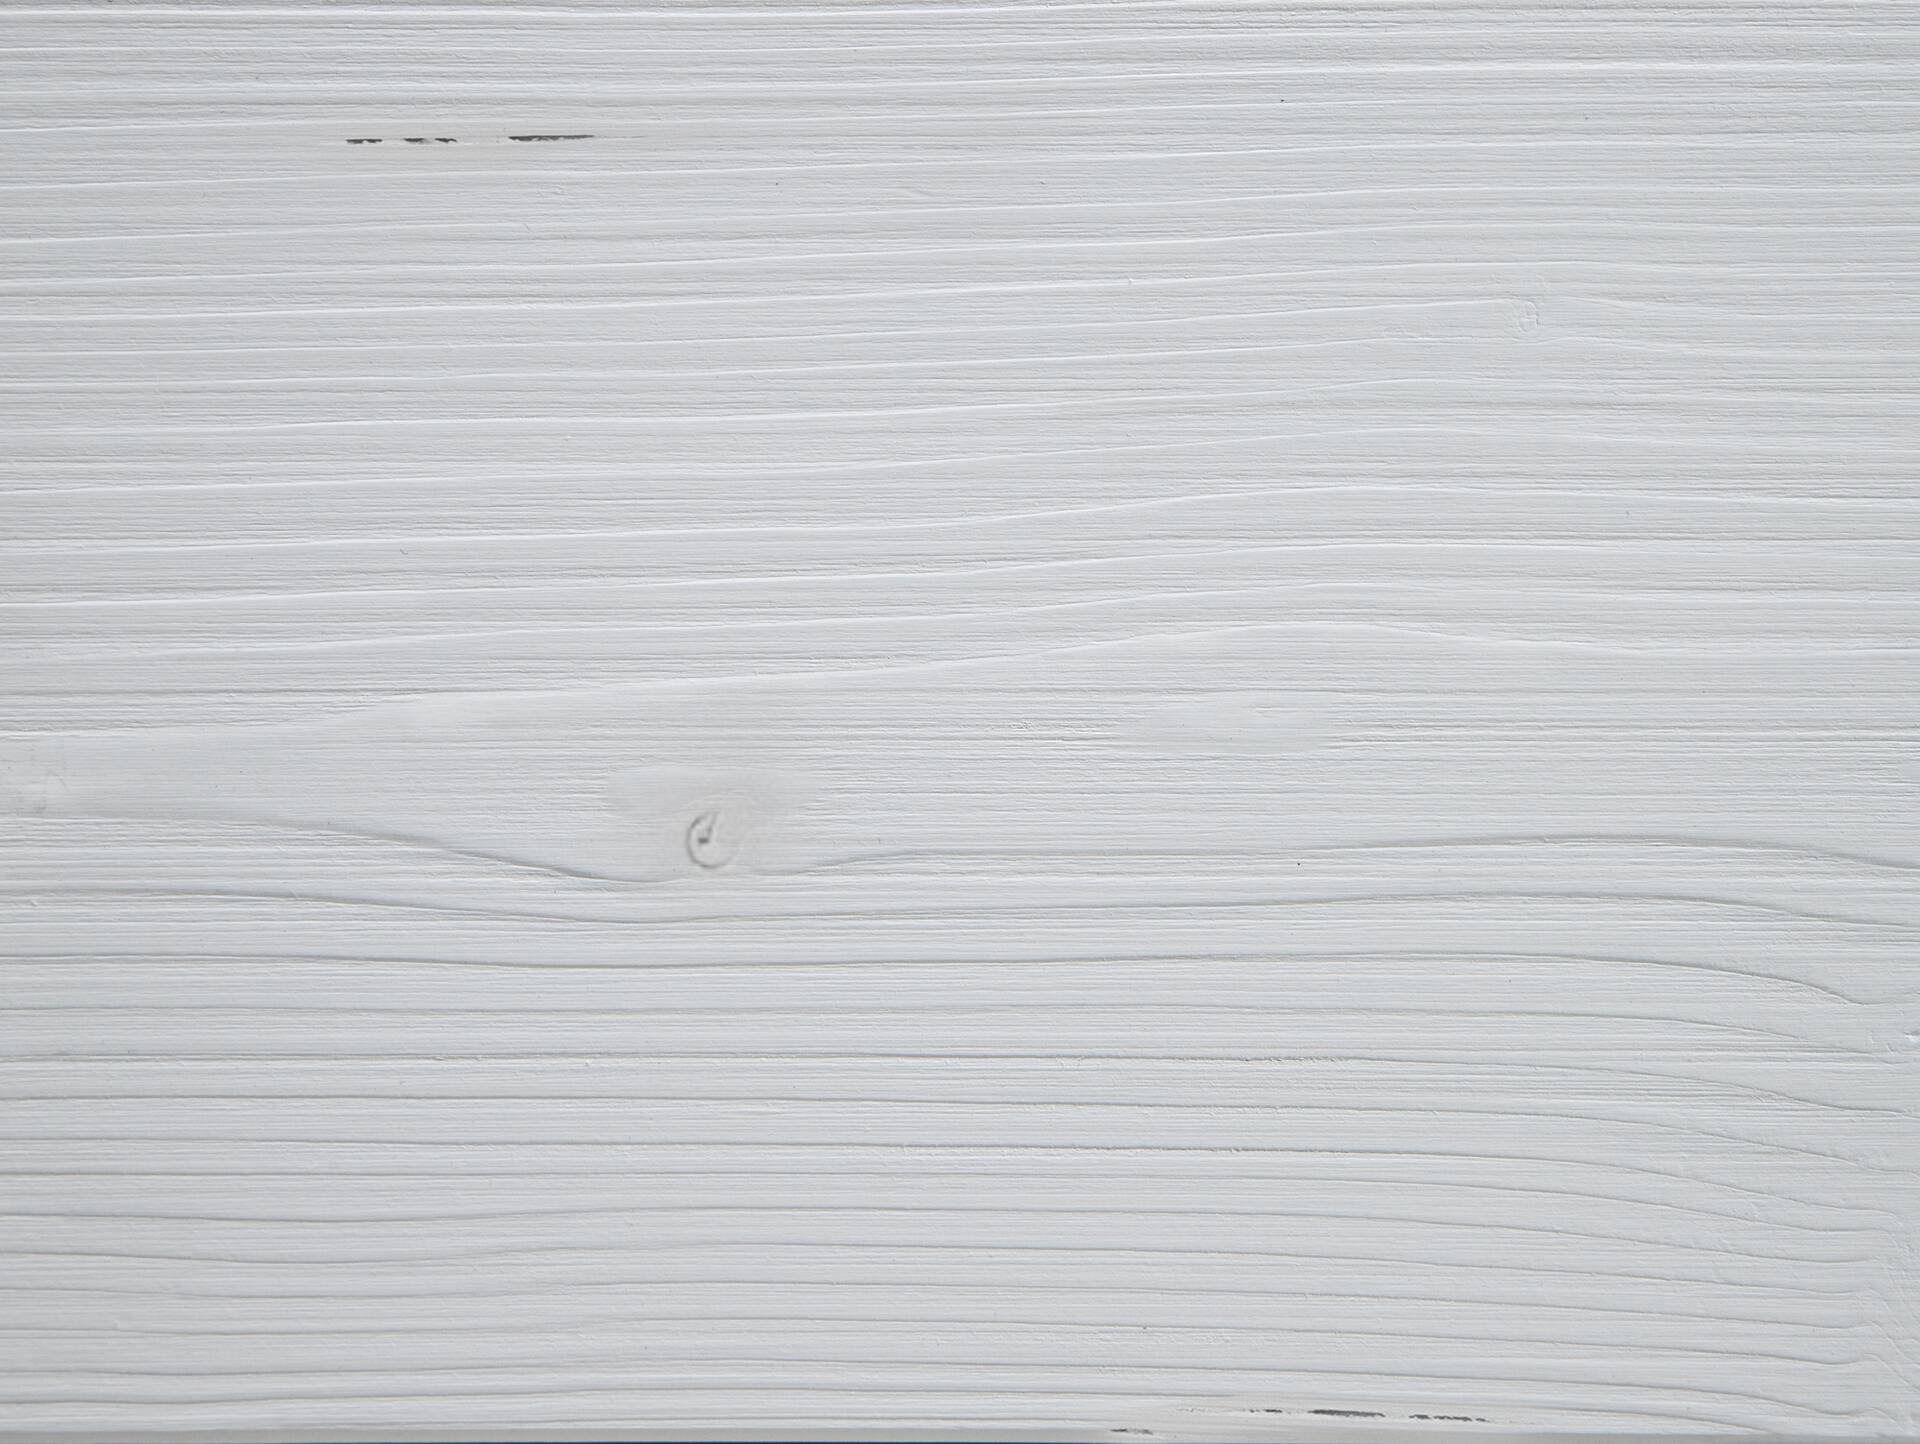 LUKY Kufenbett mit Polsterkopfteil, Material Massivholz, Fichte massiv, Kufen schwarz 140 x 220 cm | weiss | Kunstleder Schwarz